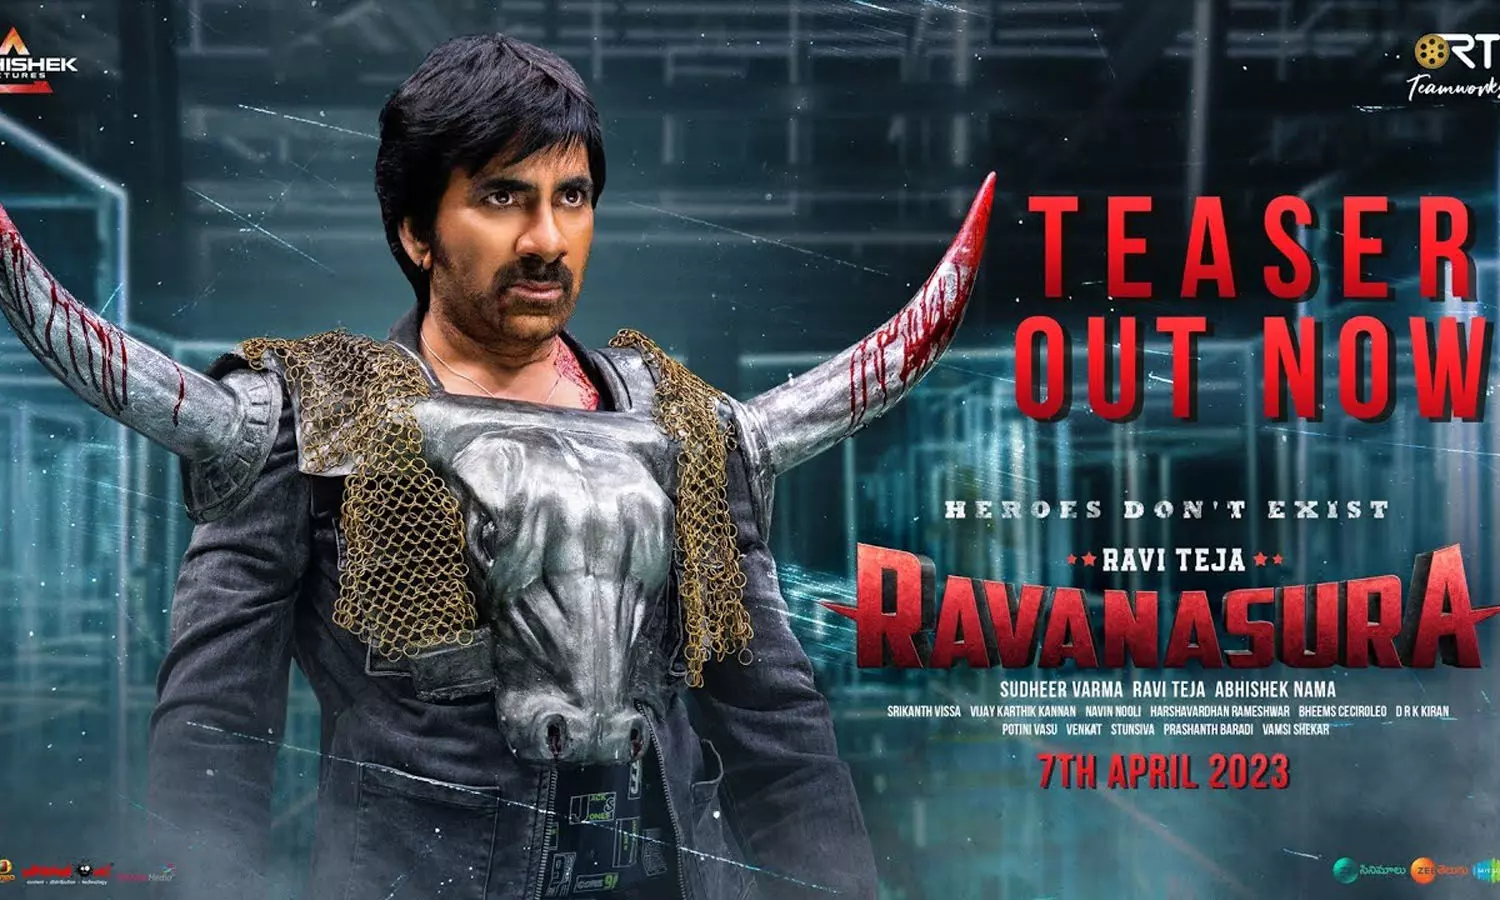 Ravanasura Teaser: Evil Avatar of Ravi Teja